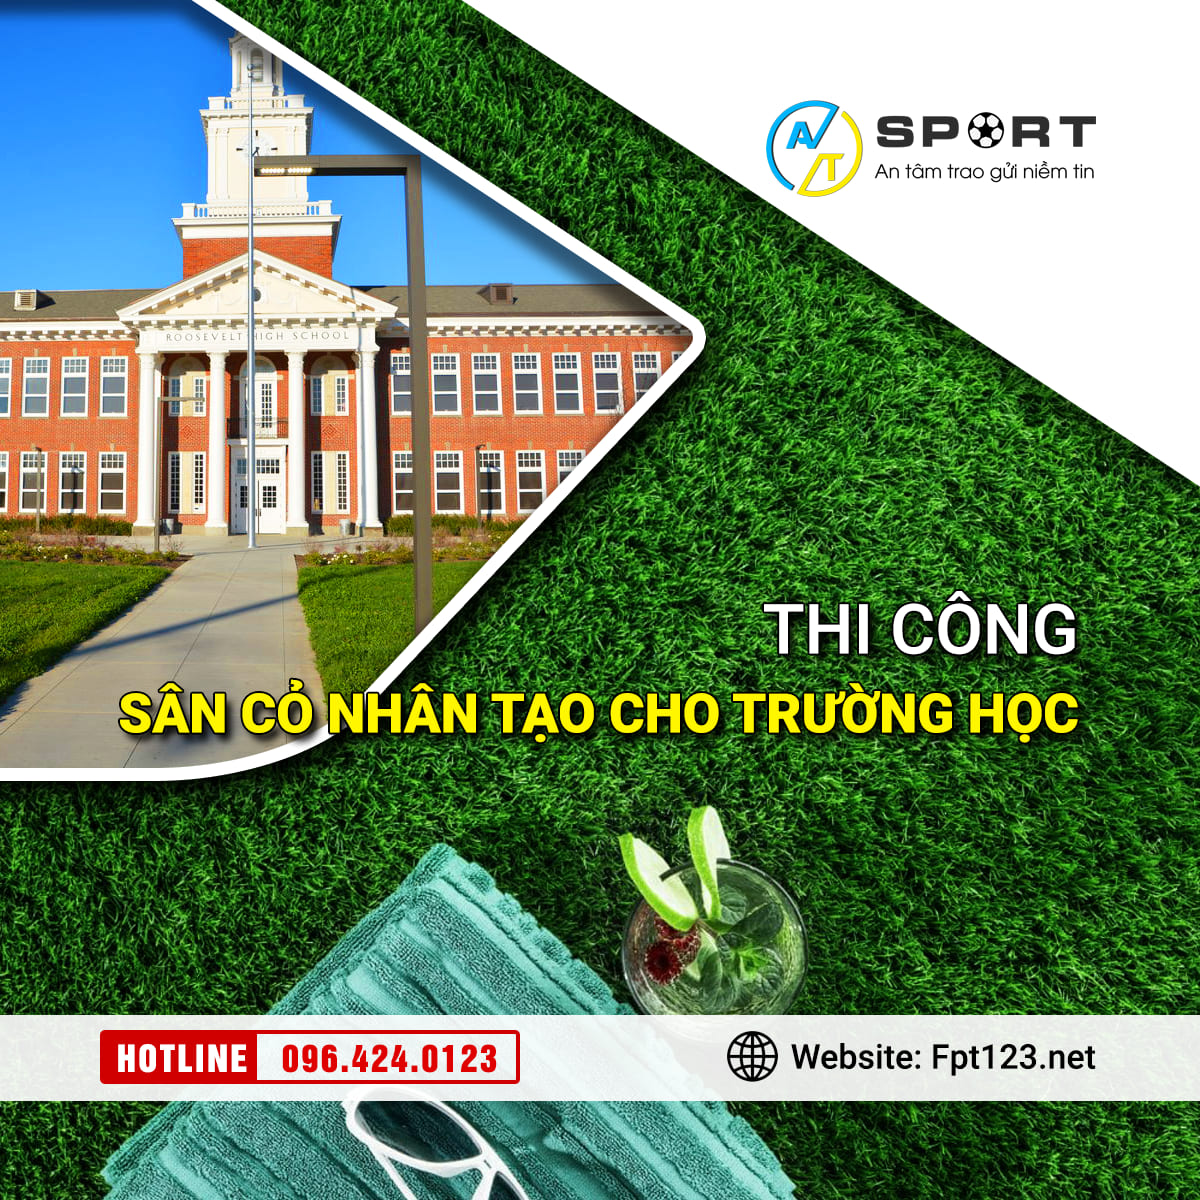 Thi công sân cỏ nhân tạo cho trường học tại Sơn Trà, Đà Nẵng